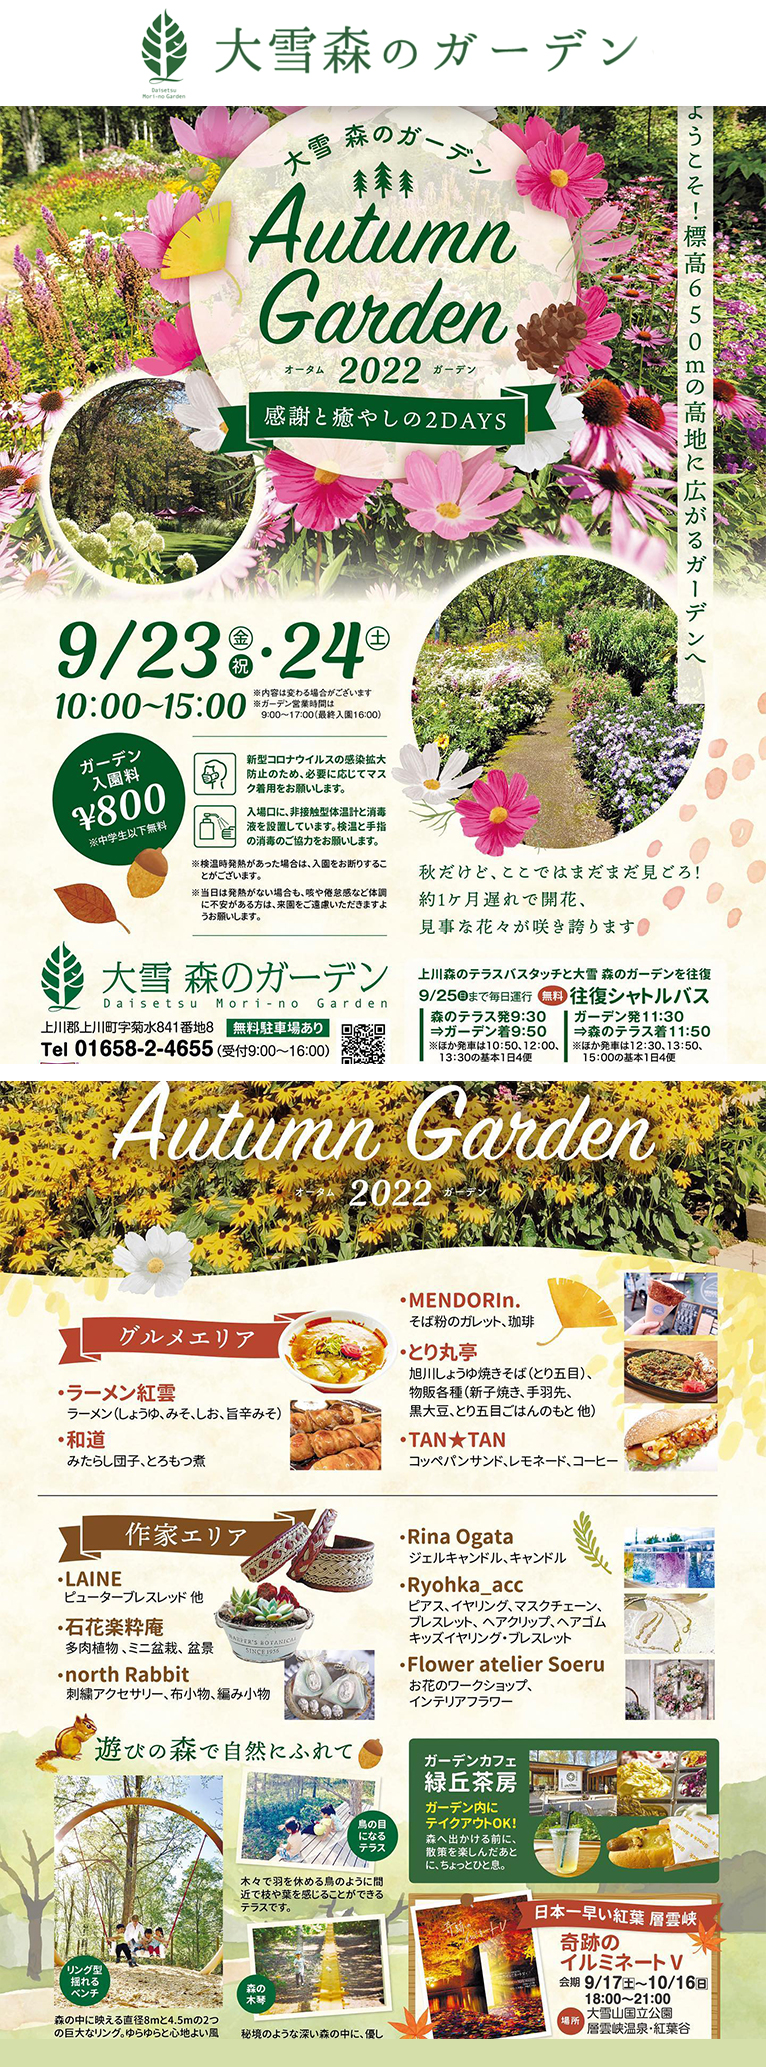 2022年9月23・24日『Autumn Garden2022〜感謝と癒しの2days』大雪森のガーデン